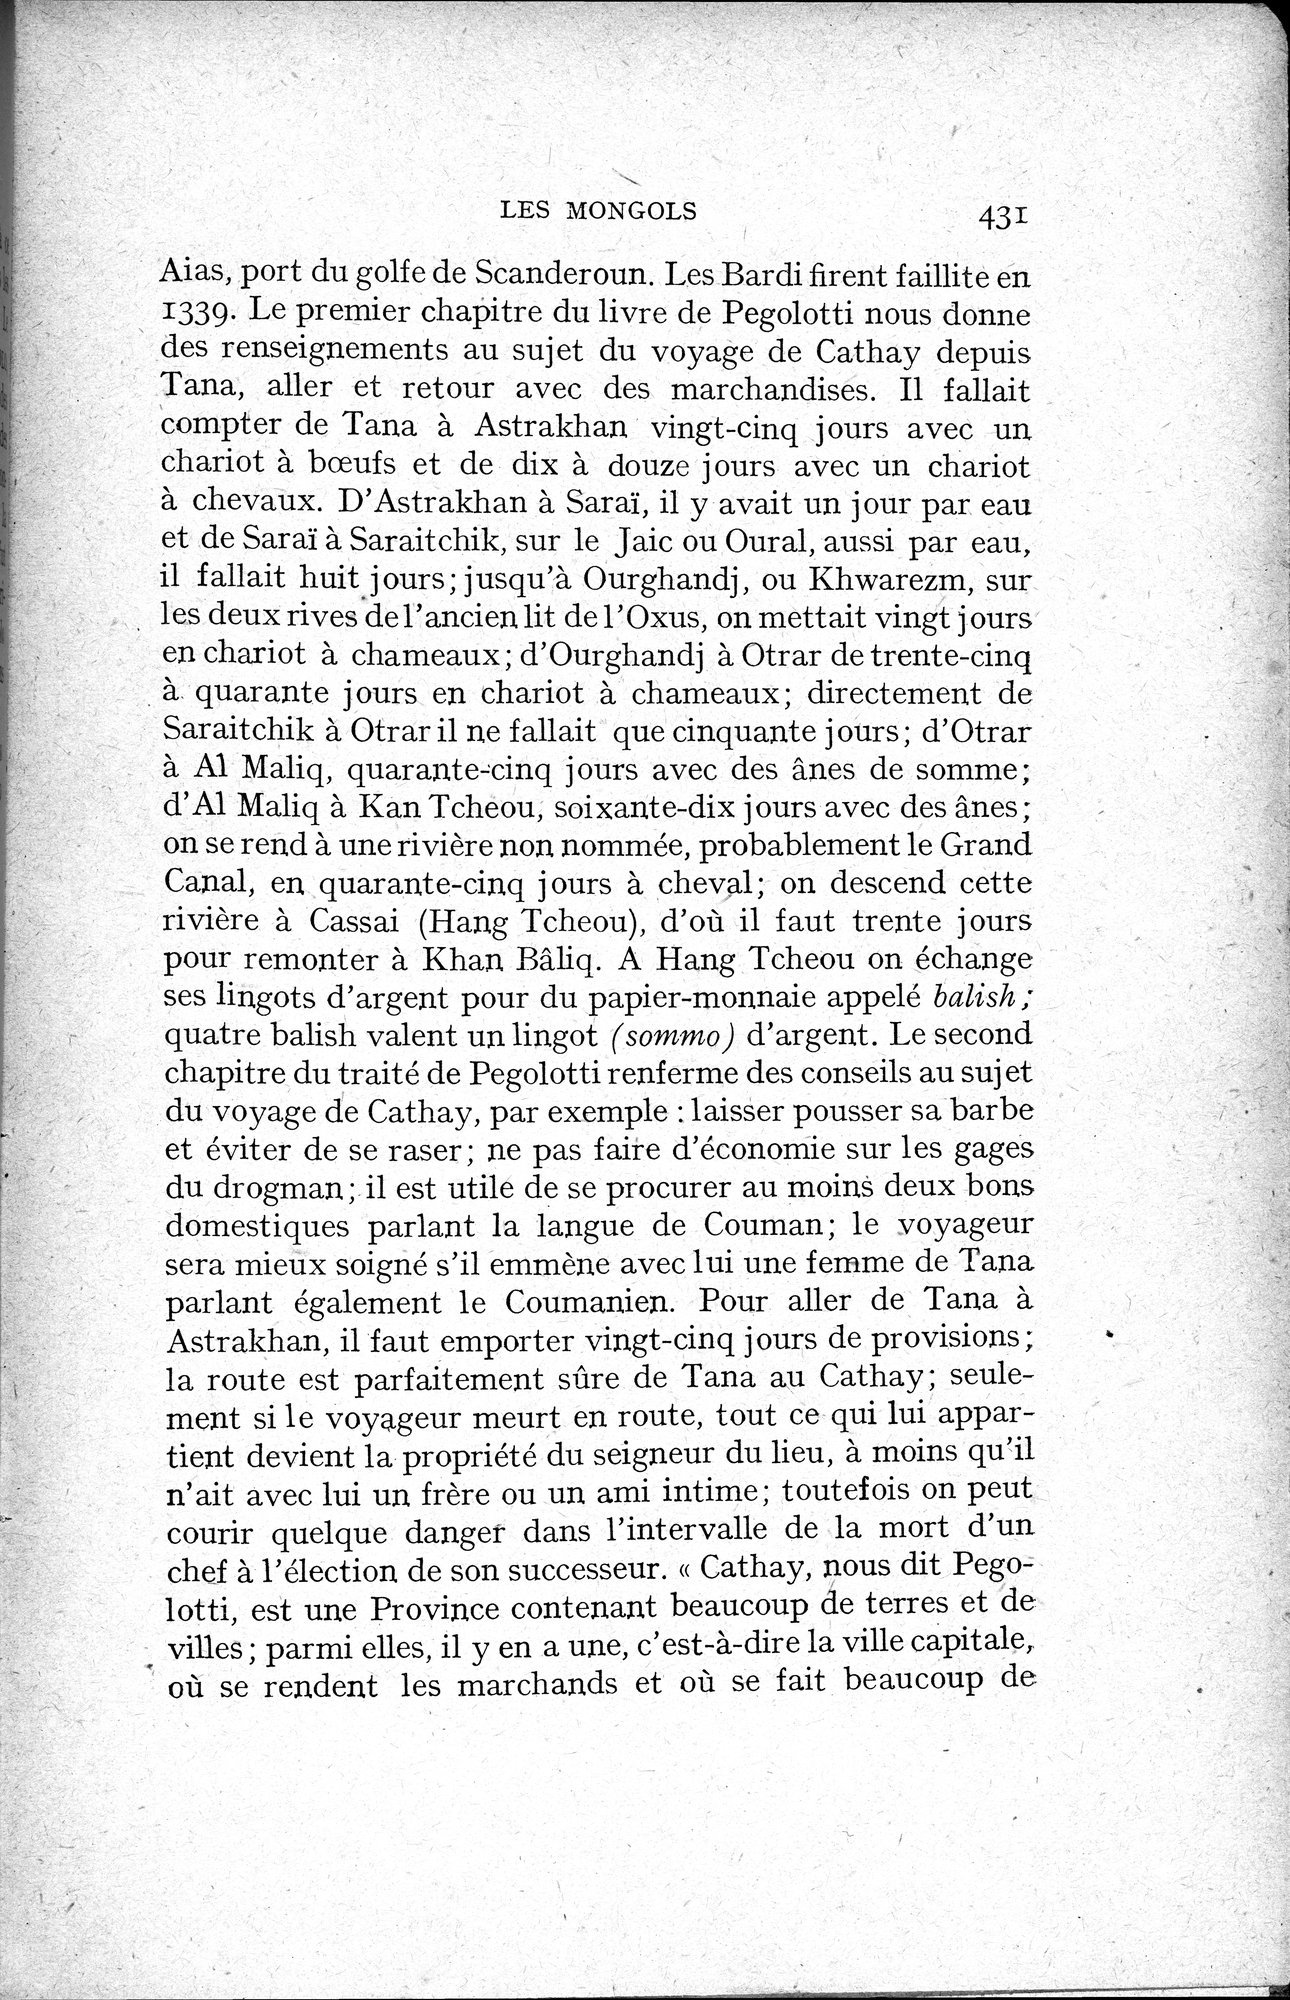 Histoire Générale de la Chine : vol.2 / Page 433 (Grayscale High Resolution Image)